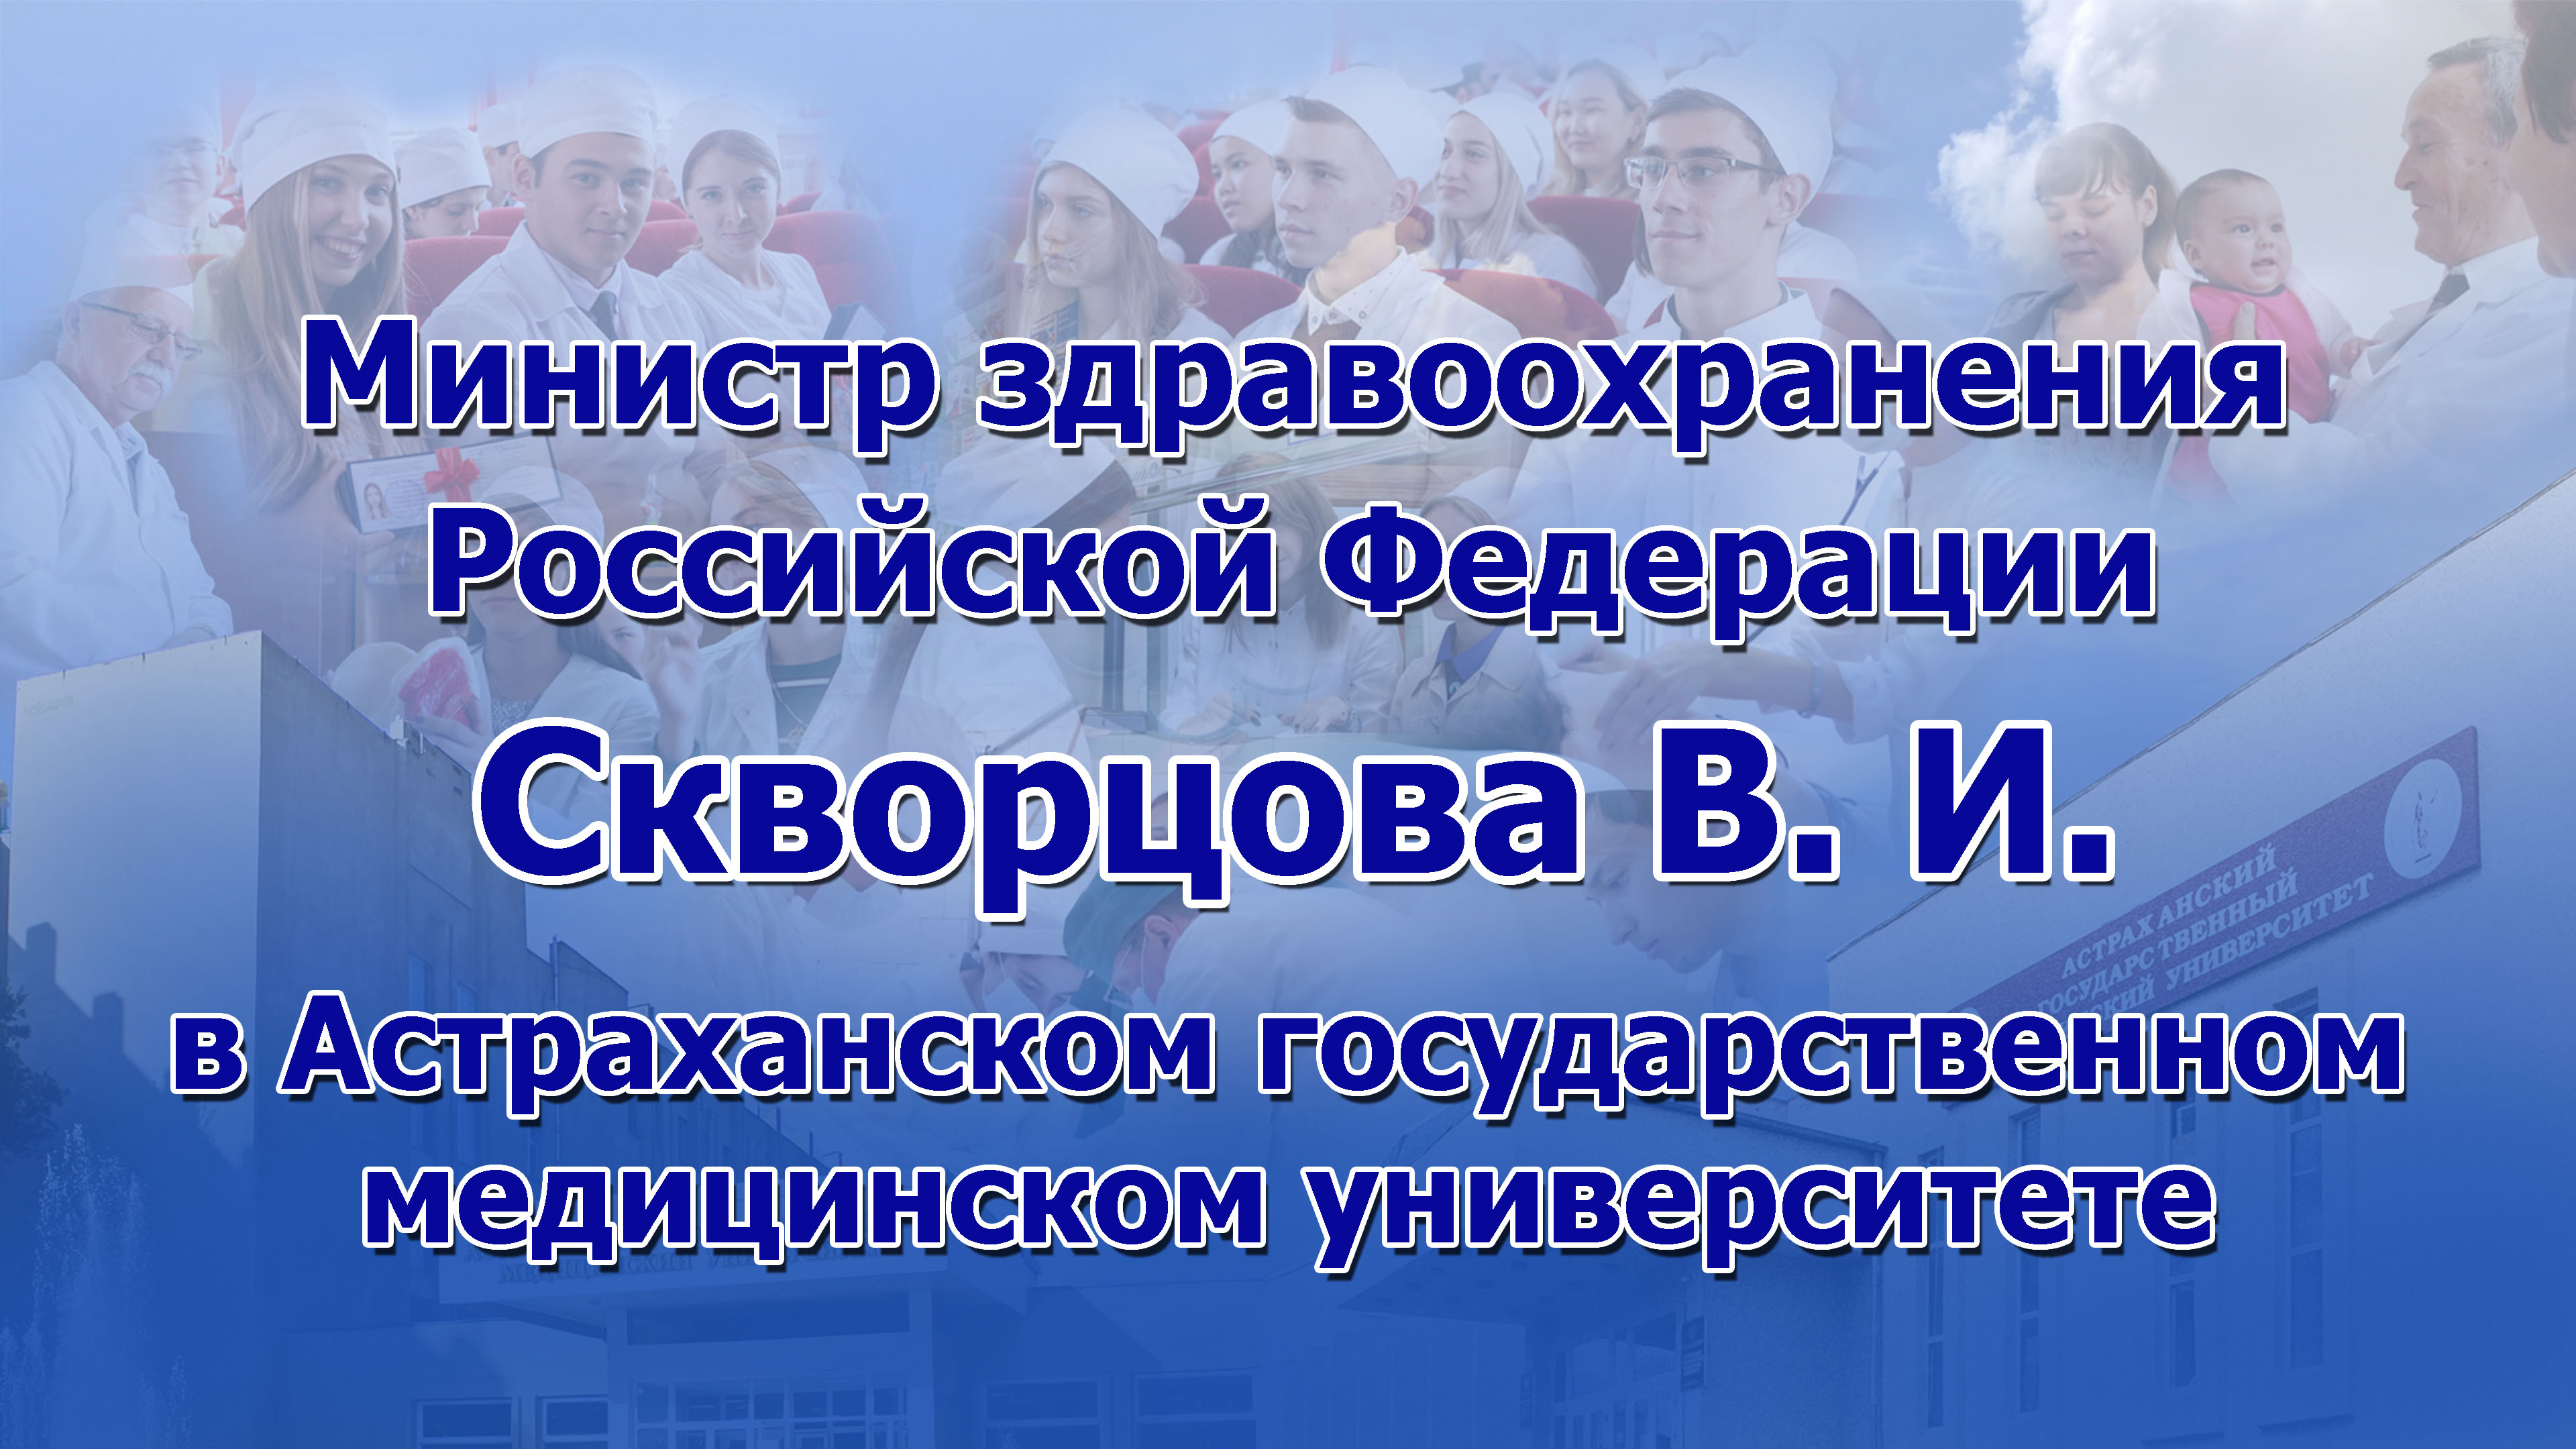 Видео-сюжет о визите в Астраханский ГМУ министра здравоохранения В.И. Скворцовой